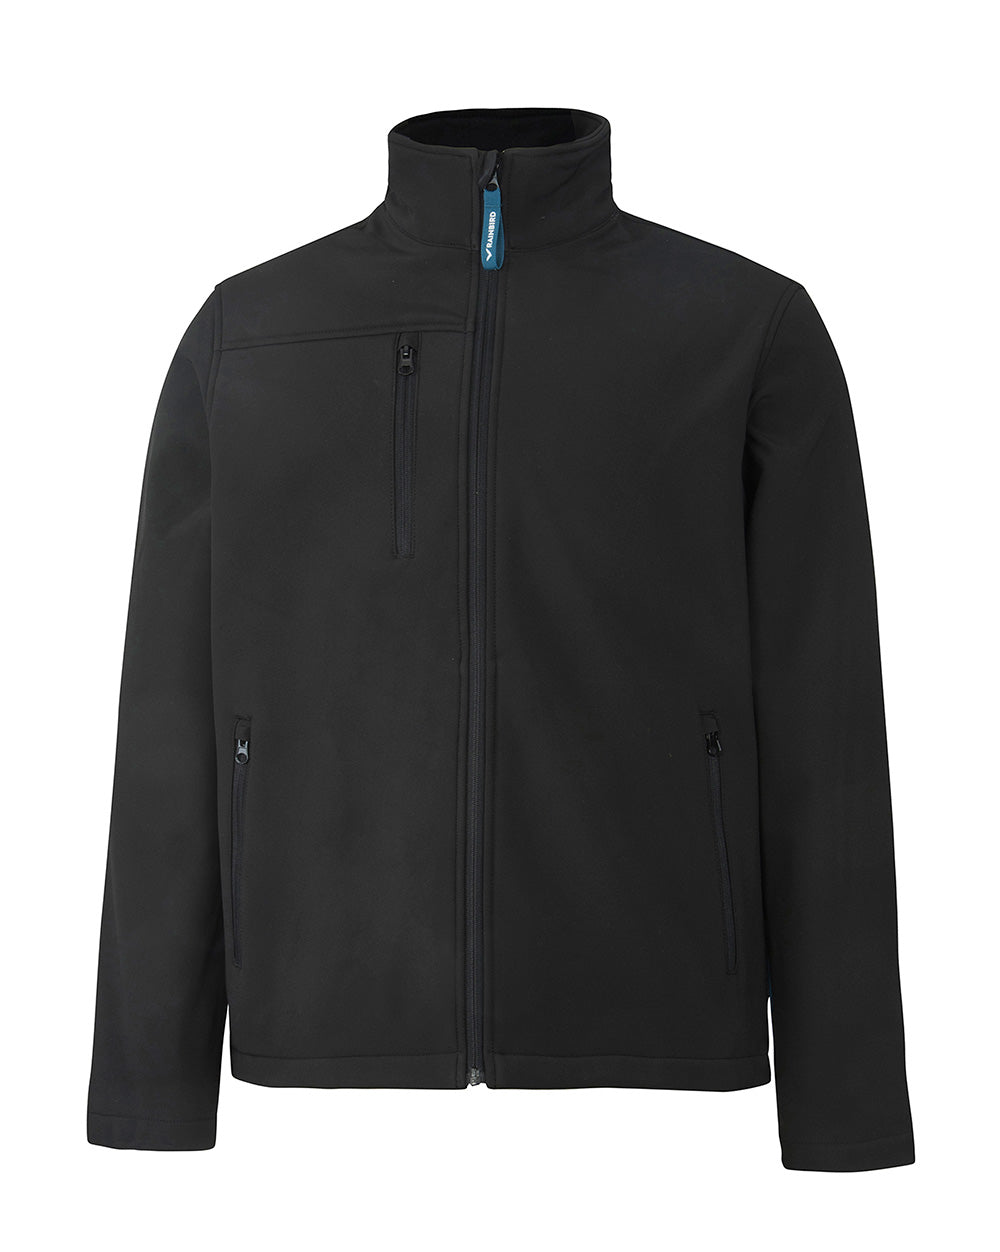 Dunstall Softshell Jacket in Black – Rainbird Clothing